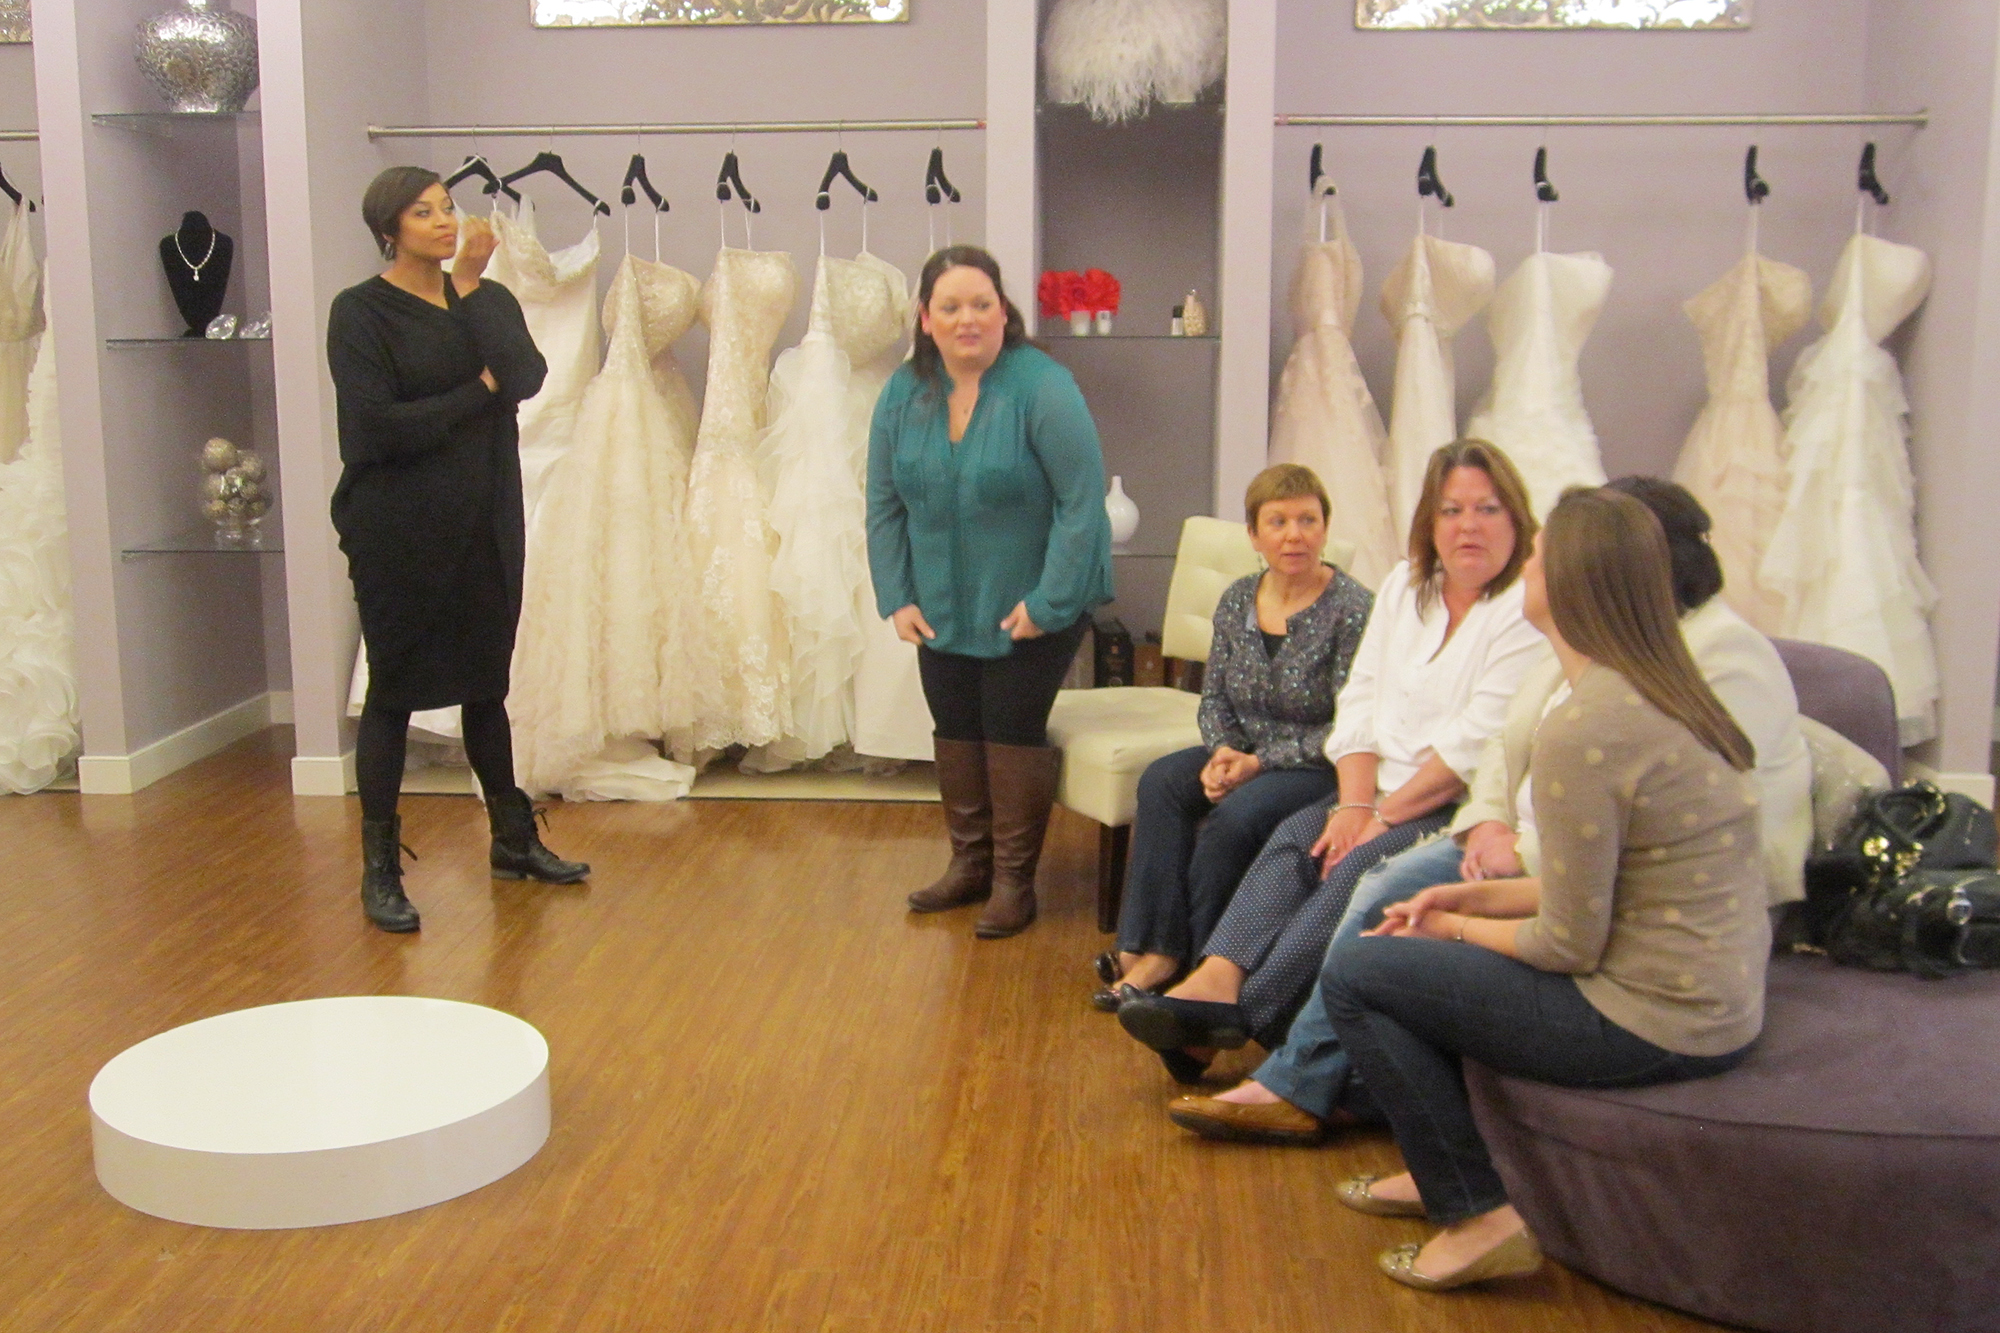 plus size bride, curvy brides, curvaceous couture bridal salon